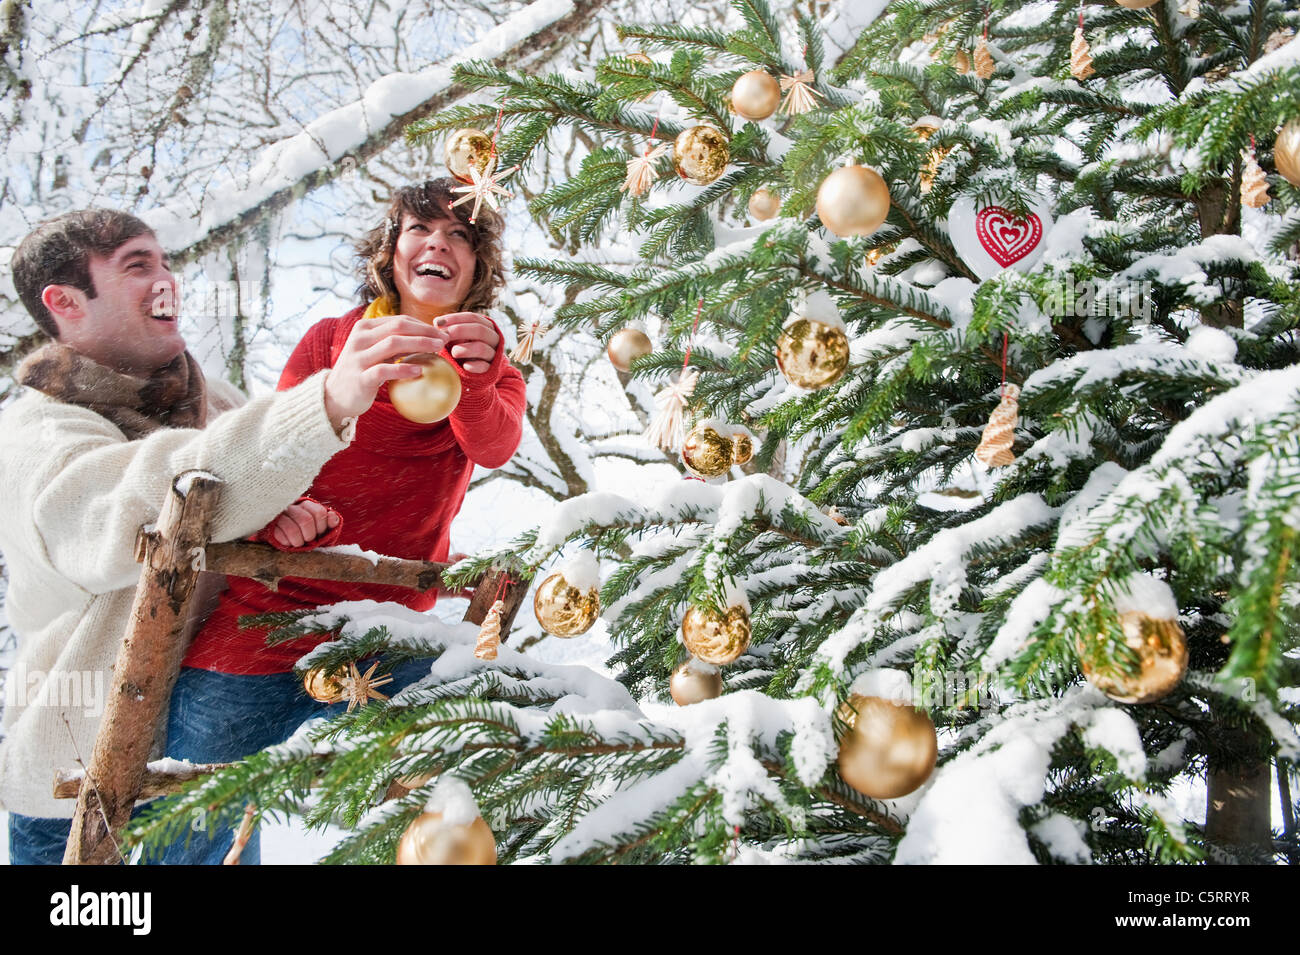 Österreich, Salzburger Land, Flachau, junger Mann und Frau schmücken Weihnachtsbaum im winter Stockfoto